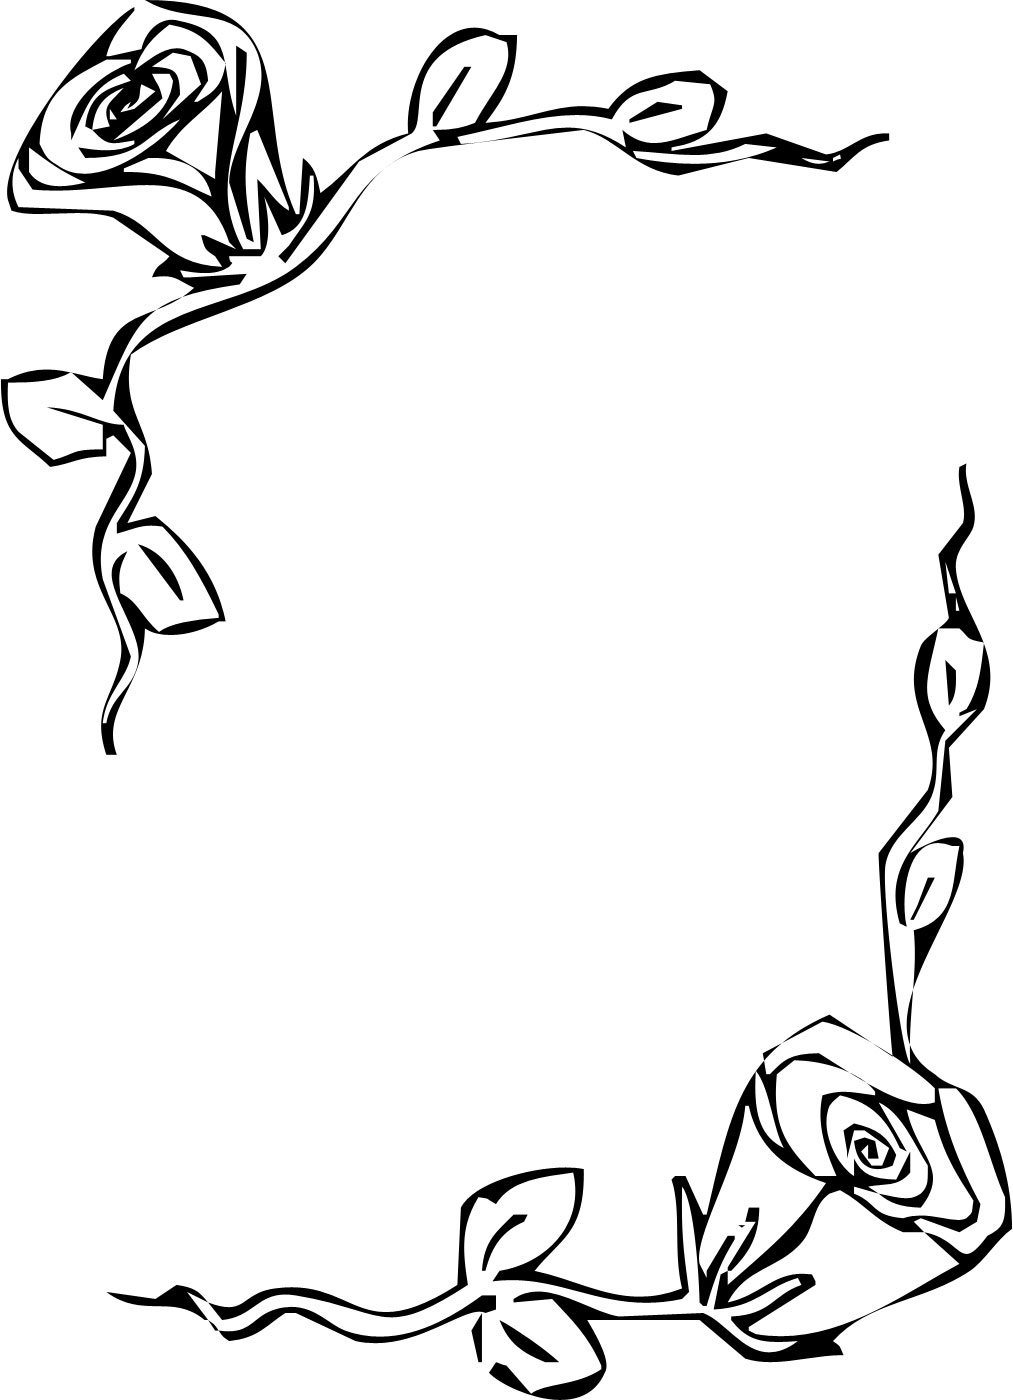 花のフレーム枠イラスト-白黒・バラ